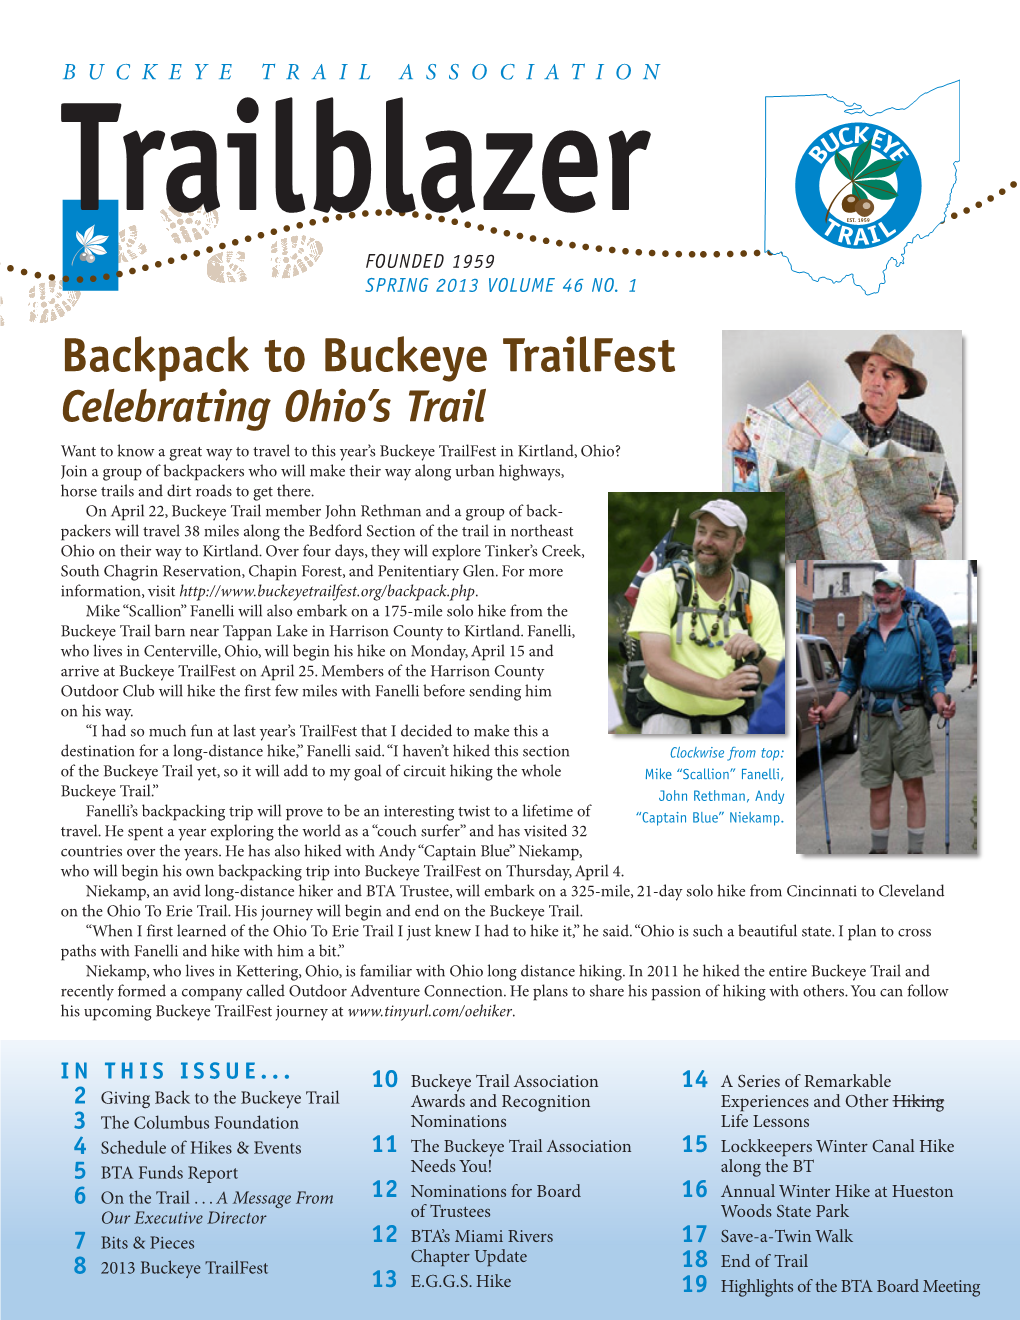 Backpack to Buckeye Trailfest